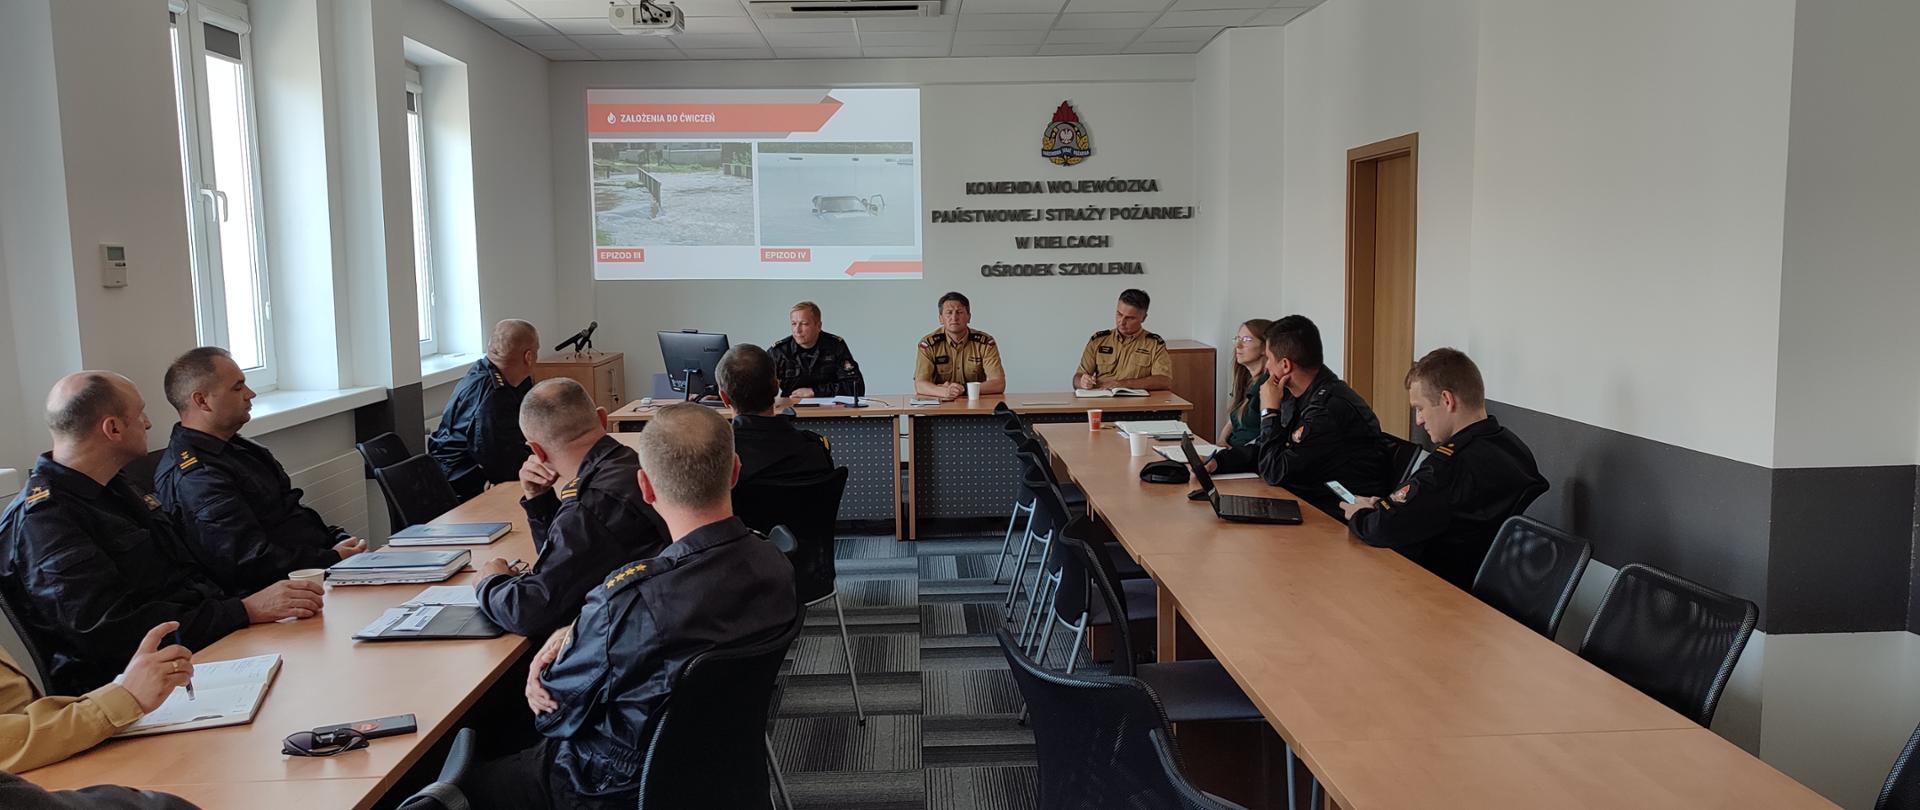 Zdjęcie przedstawia oficerów Państwowej Straży Pożarnej - za nimi ekran z prezentacją dot. omawianych ćwiczeń oraz stół prezydialny z kierownictwem KW PSP i KM PSP Kielce